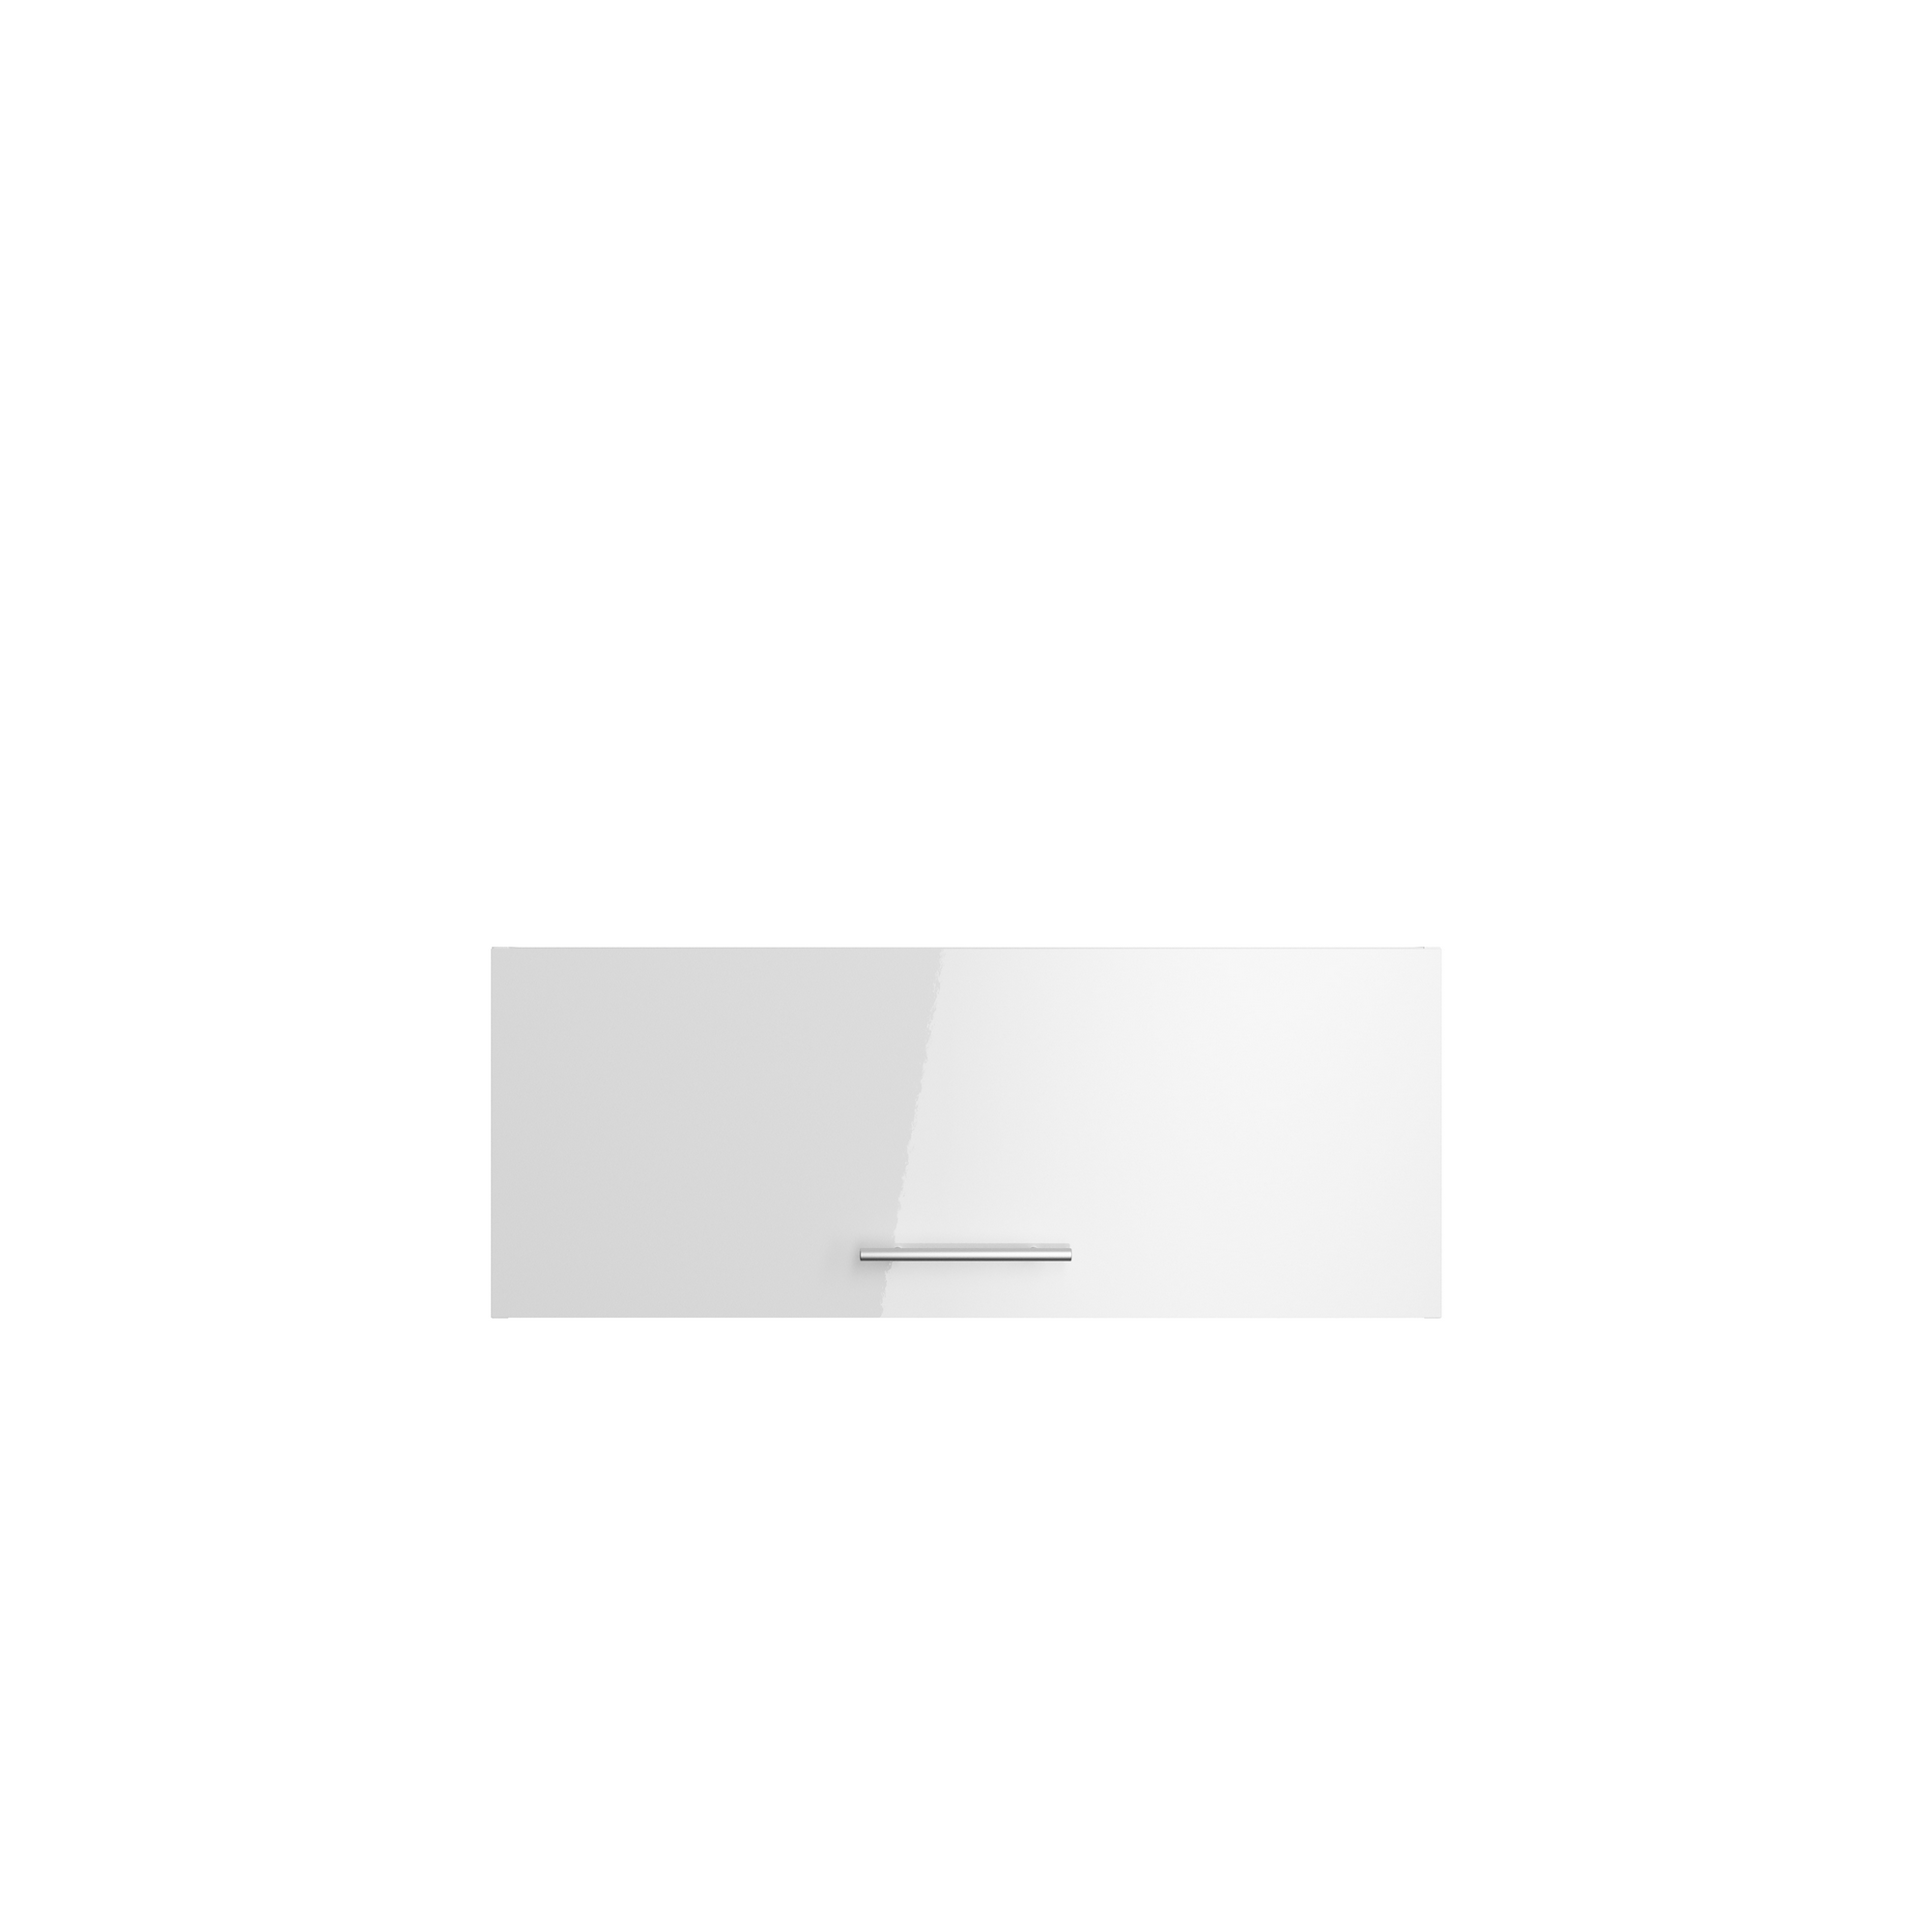 Oberschrank 'Optikomfort Rurik986' weiß 90 x 35,2 x 34,9 cm + product picture